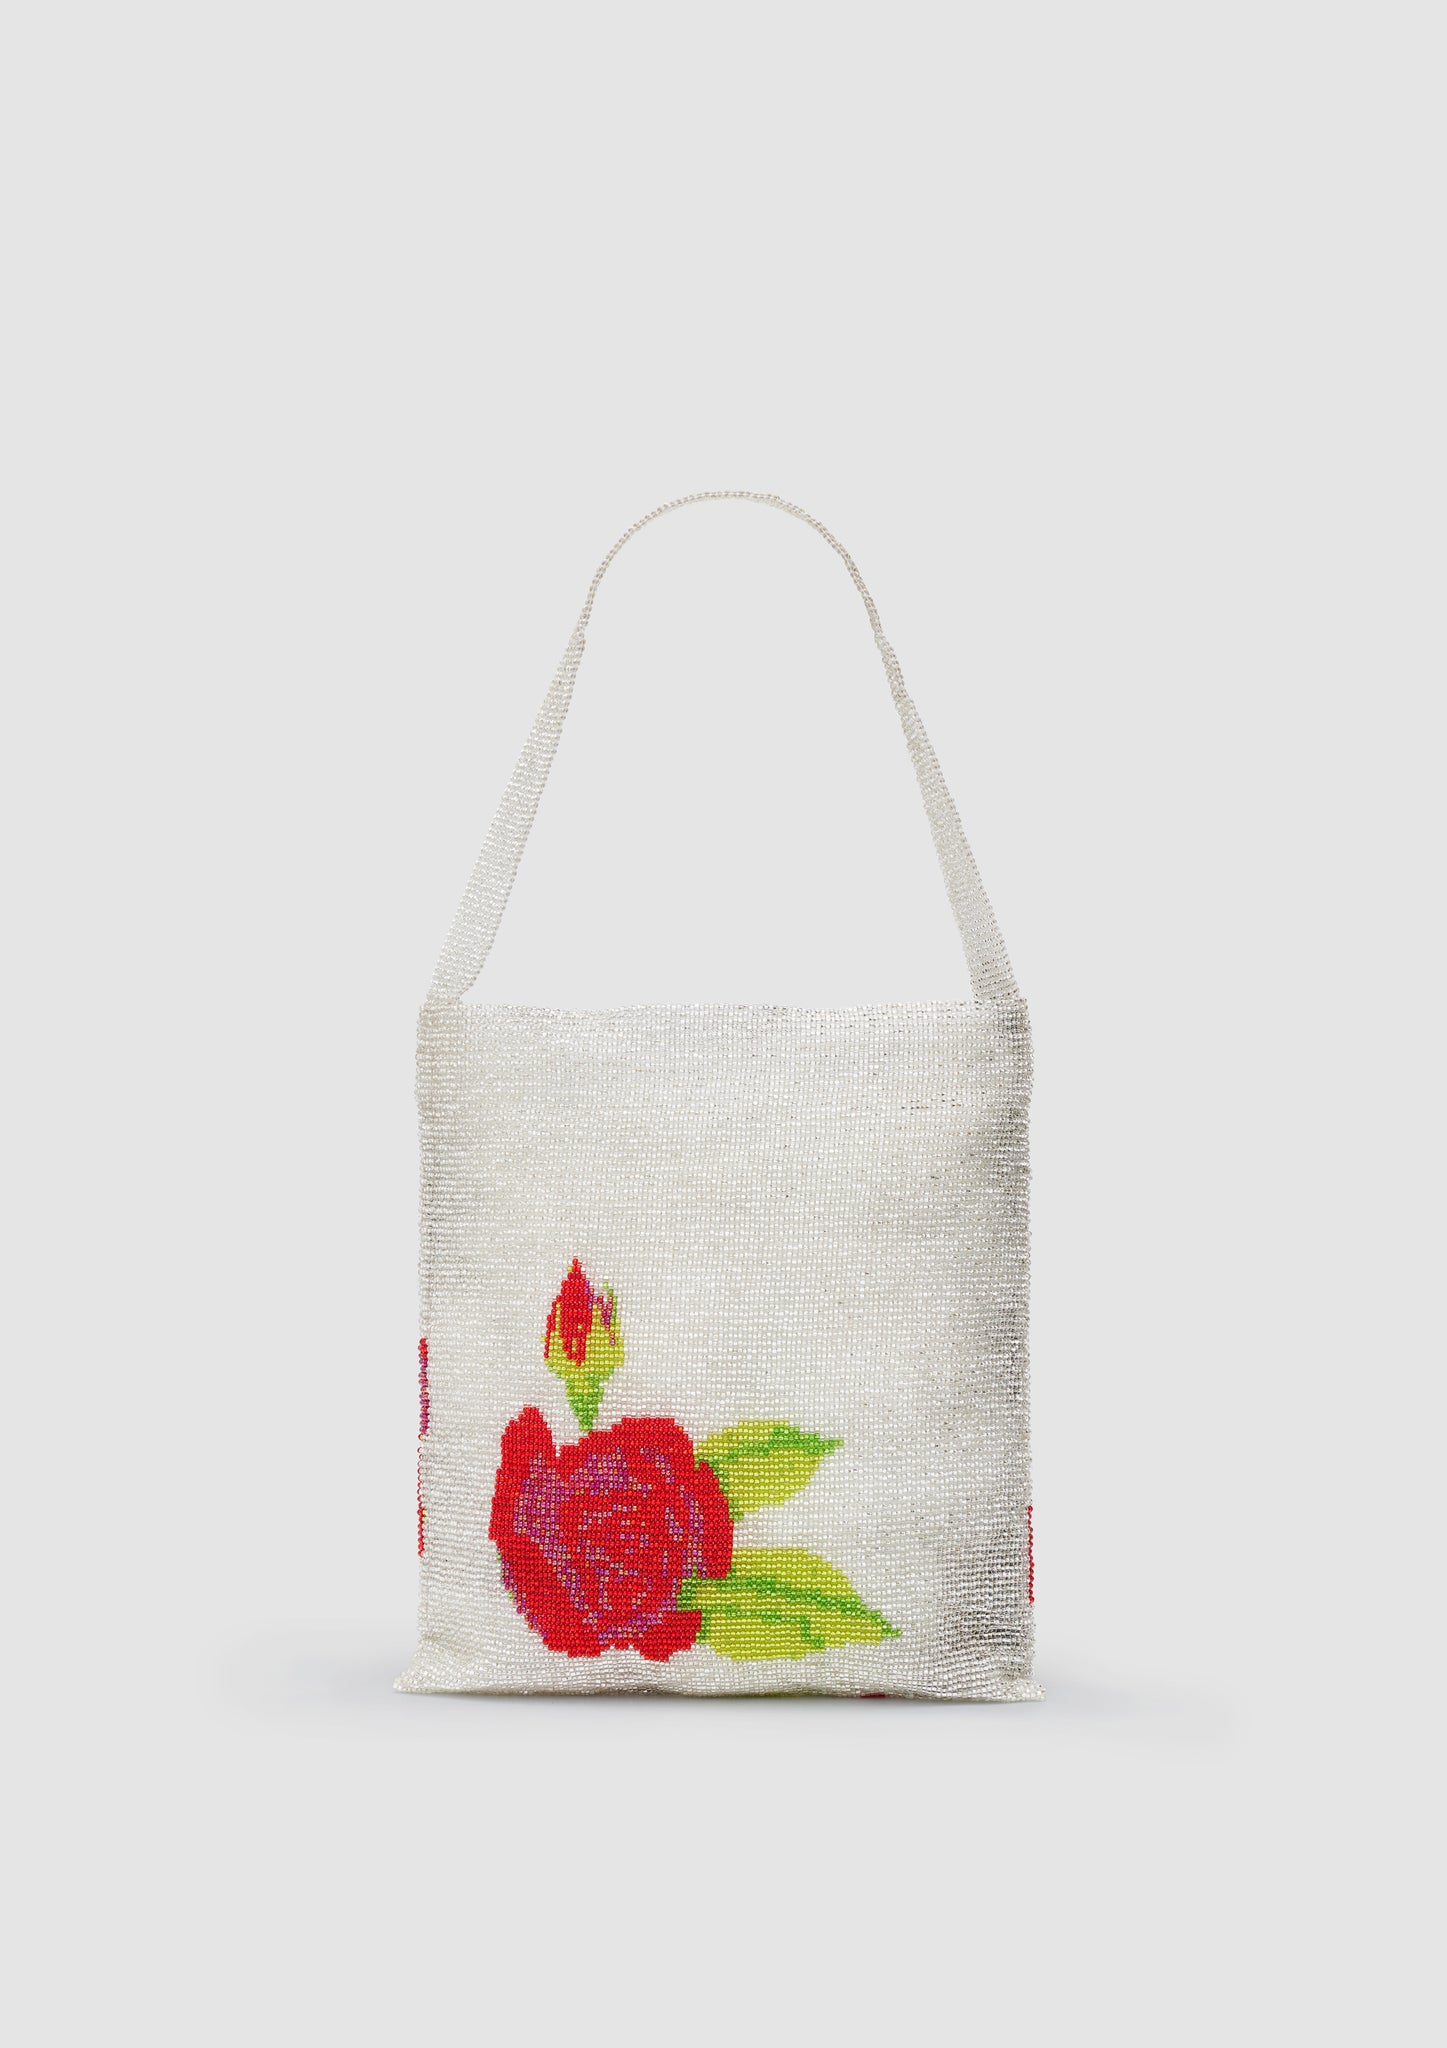 Rose Tote Bag